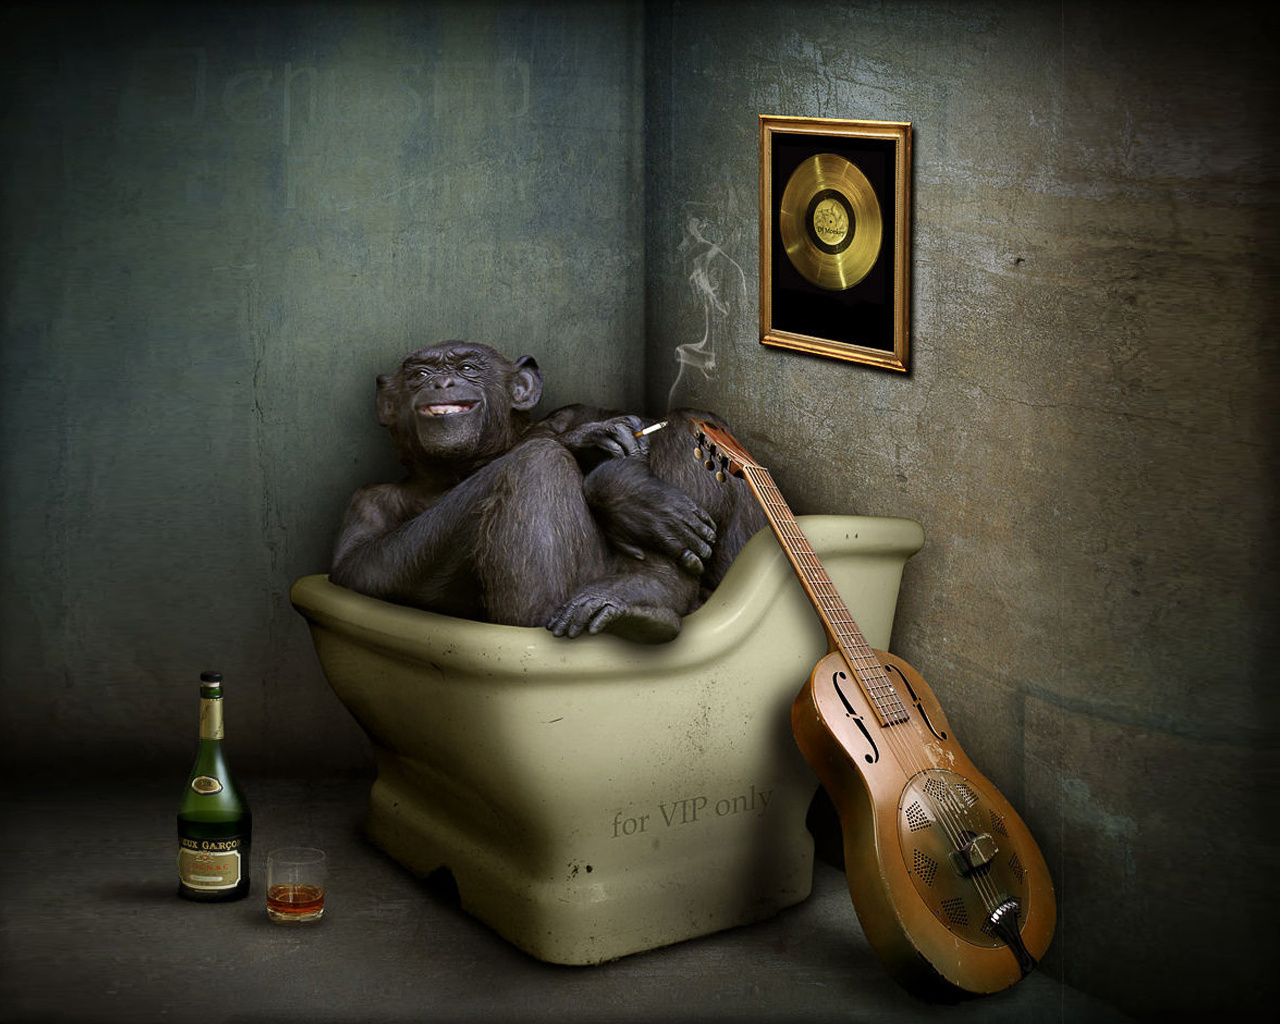 3d обои Обезьяна с сигаретой сидит в сидячей ванной, курит и пьет (for VIP only)  обезьяны # 67918